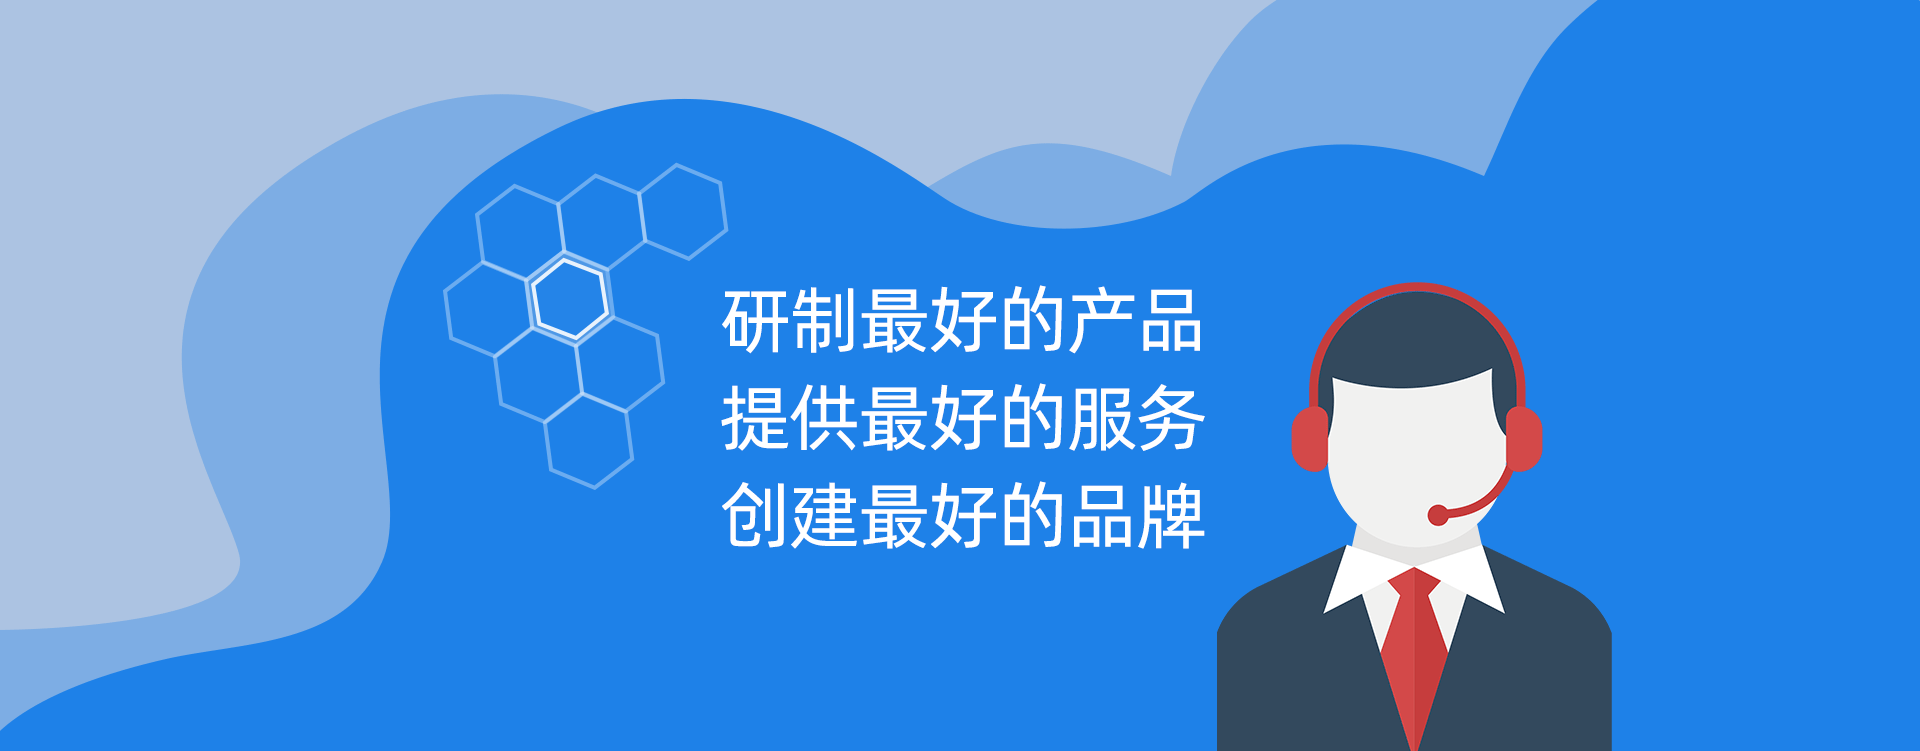 2-哈尔滨鑫科纳米科技发展有限公司